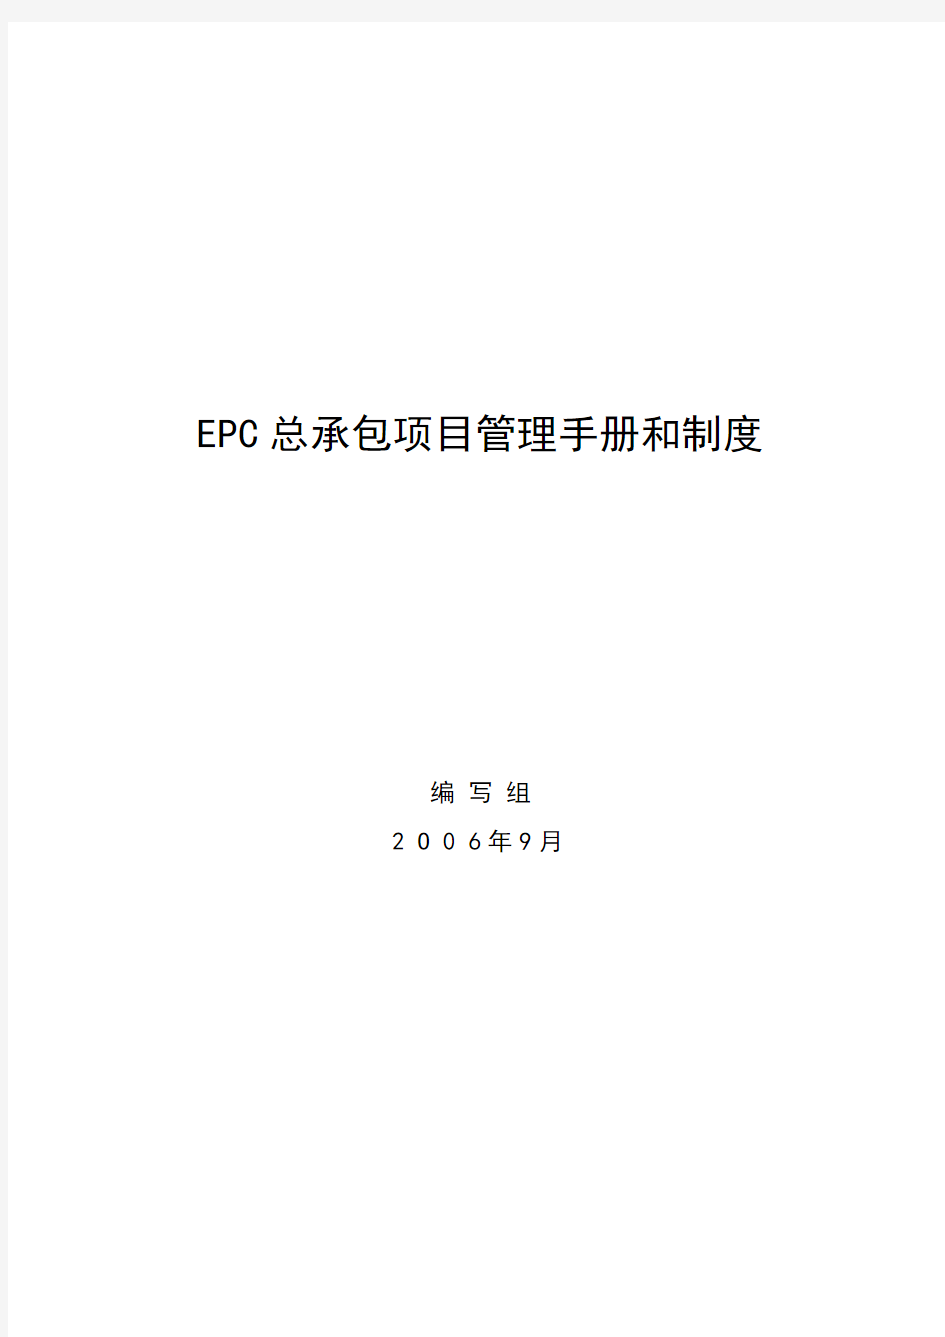 国际工程项目总承包(EPC)管理手册和制度